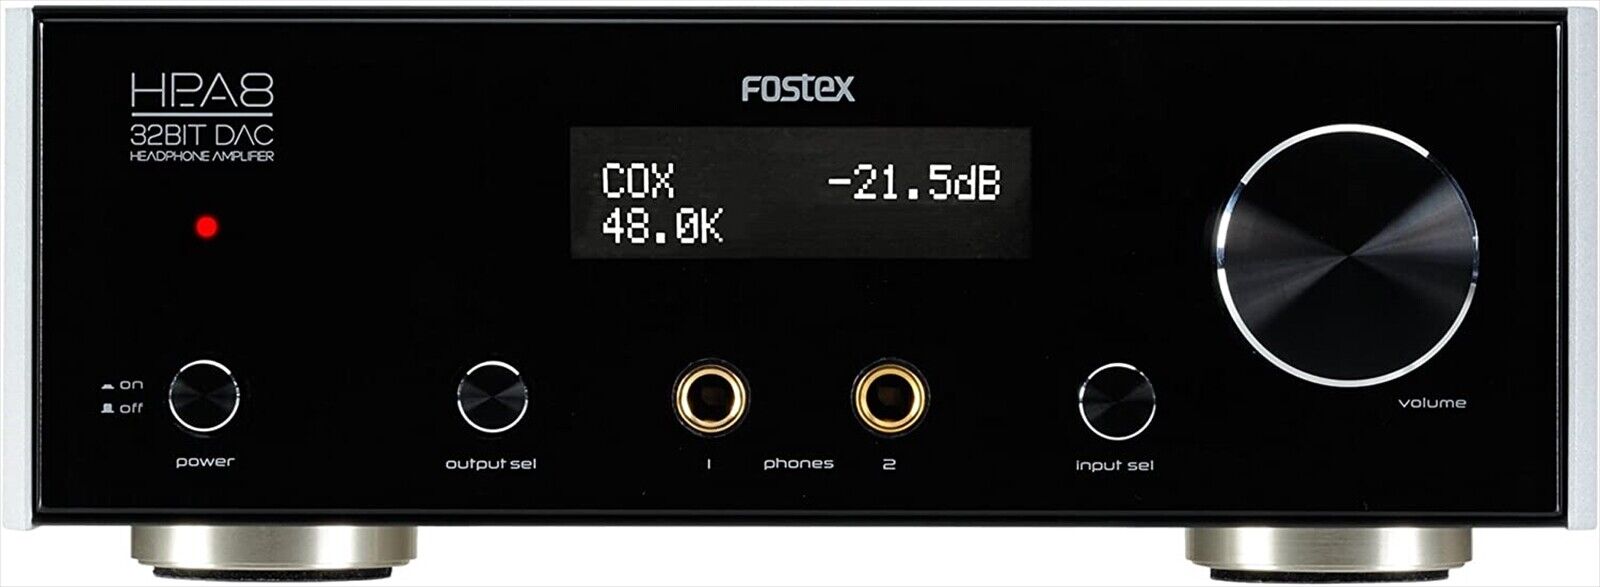 FOSTEX HP-A8 32bit DAC Headphone Amplifier AC100V w/ remote controller